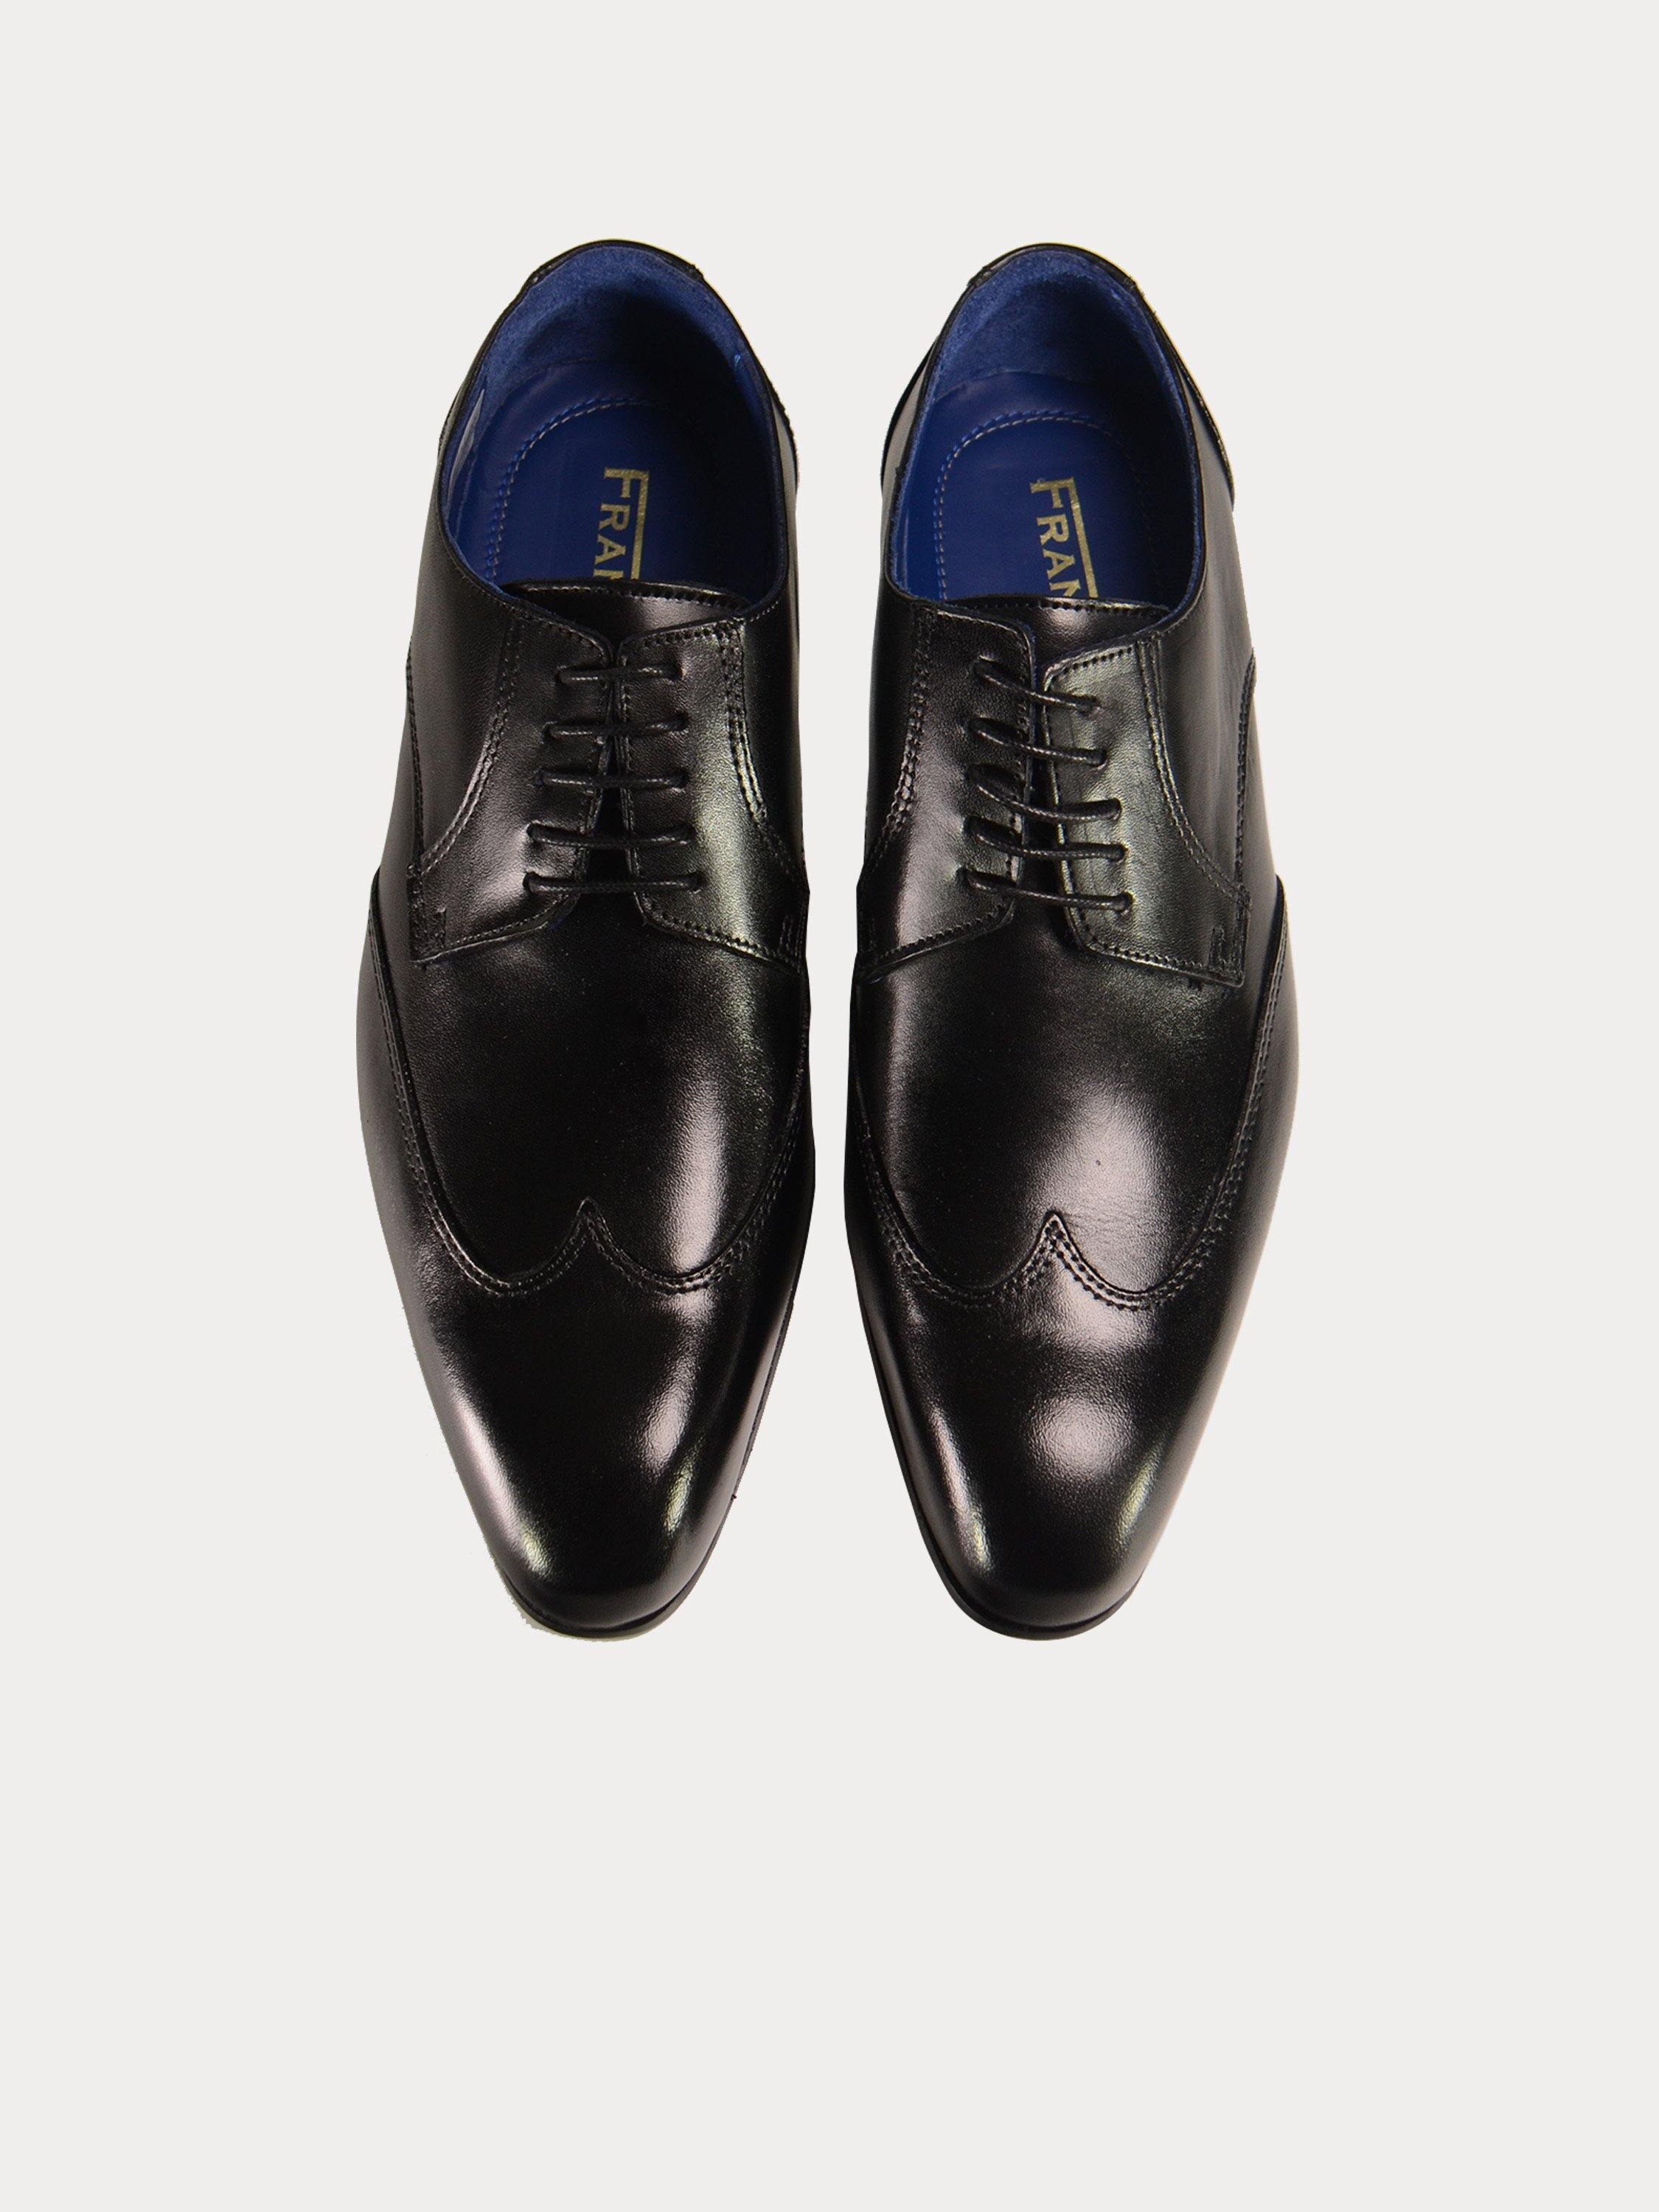 Franzini Men's Lace Up Formal Leather Shoes #color_Black